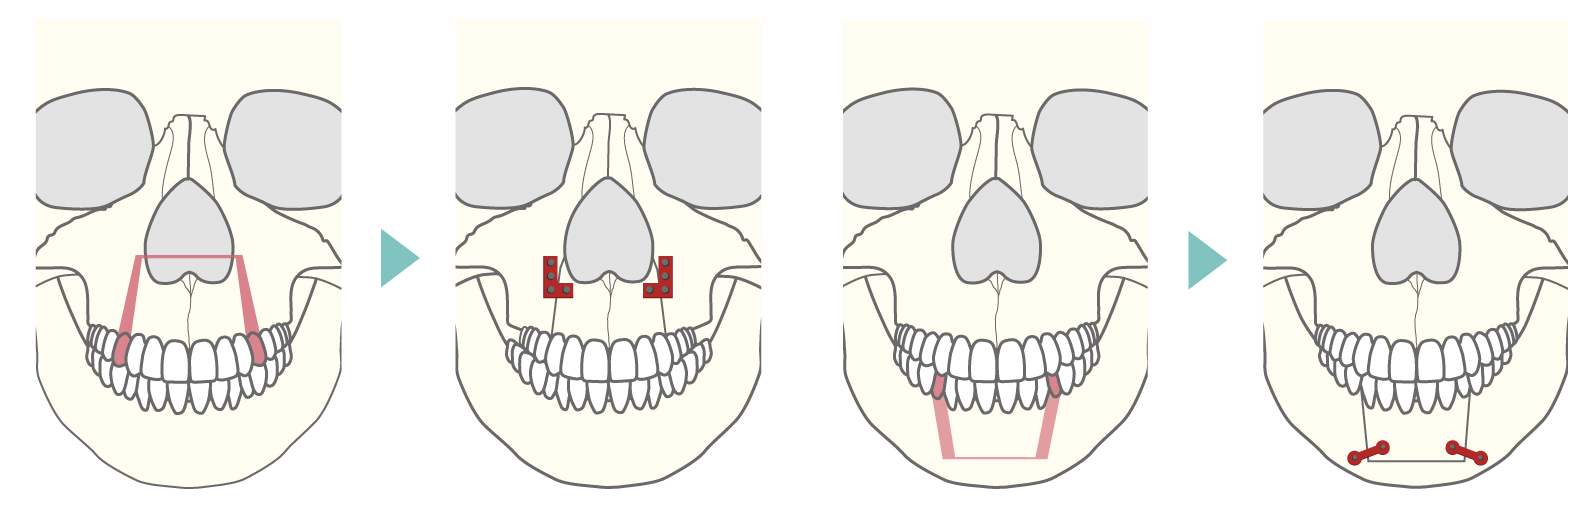 上下顎分節骨切り術式の正面からのイメージ